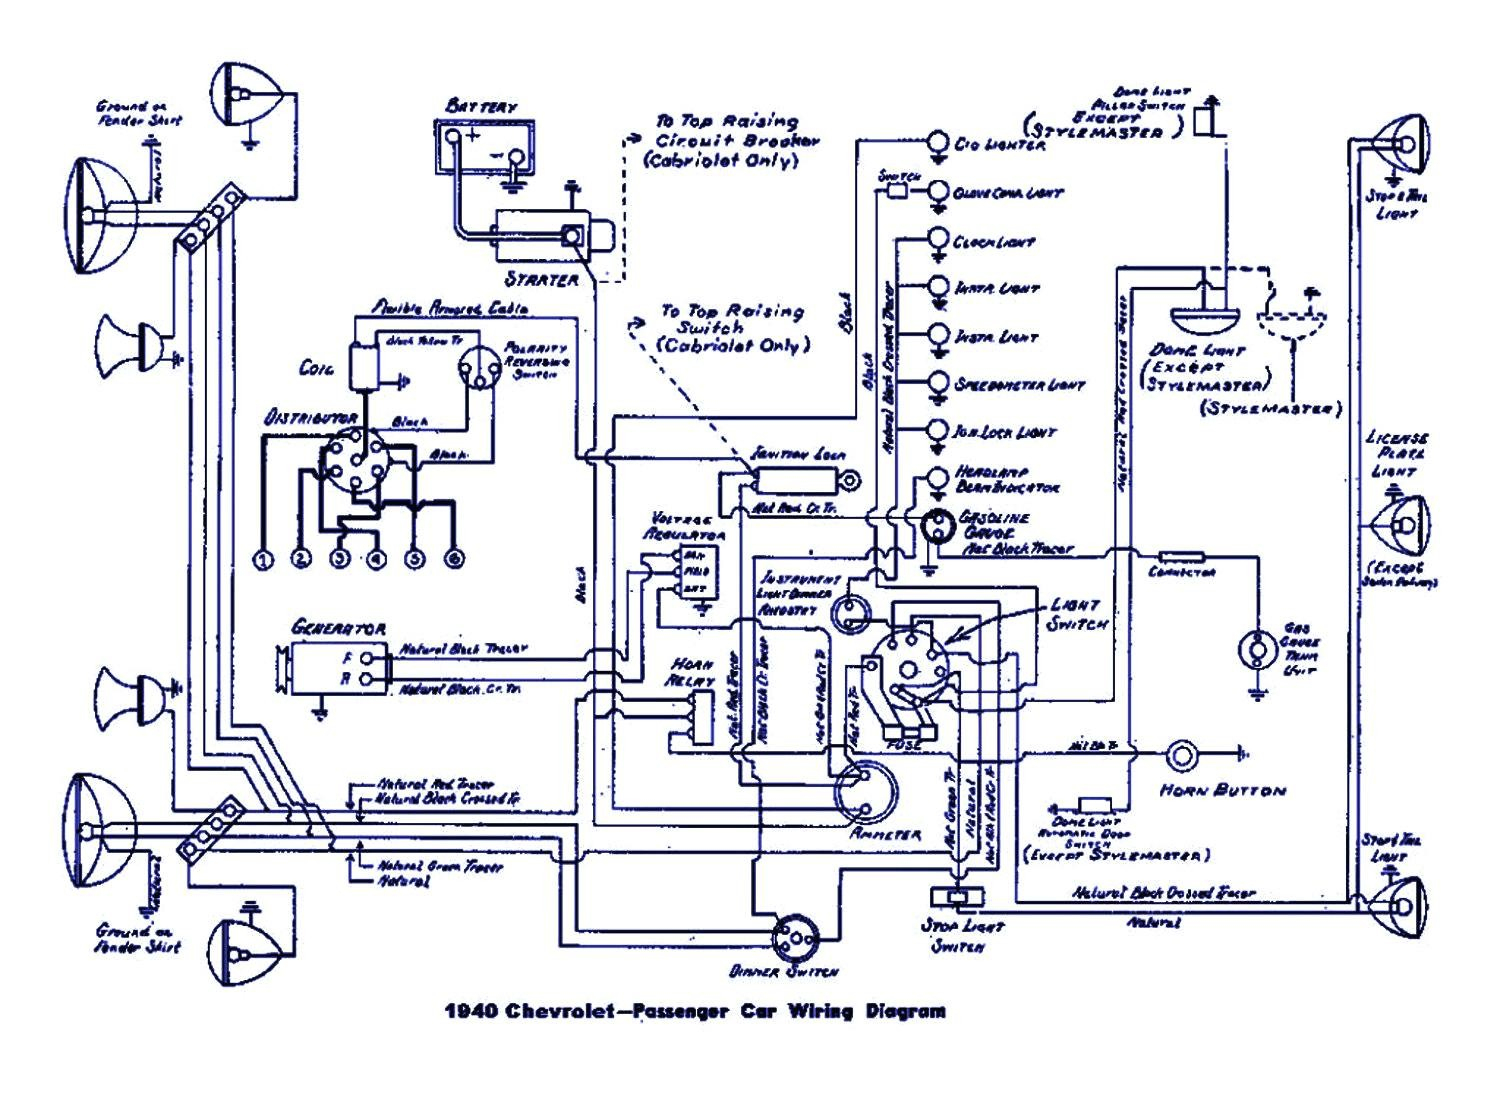 Wiring Diagrams Ezgo 36 Volt For 12 Volt - Wiring Diagrams Hubs - 48 Volt Club Car Wiring Diagram